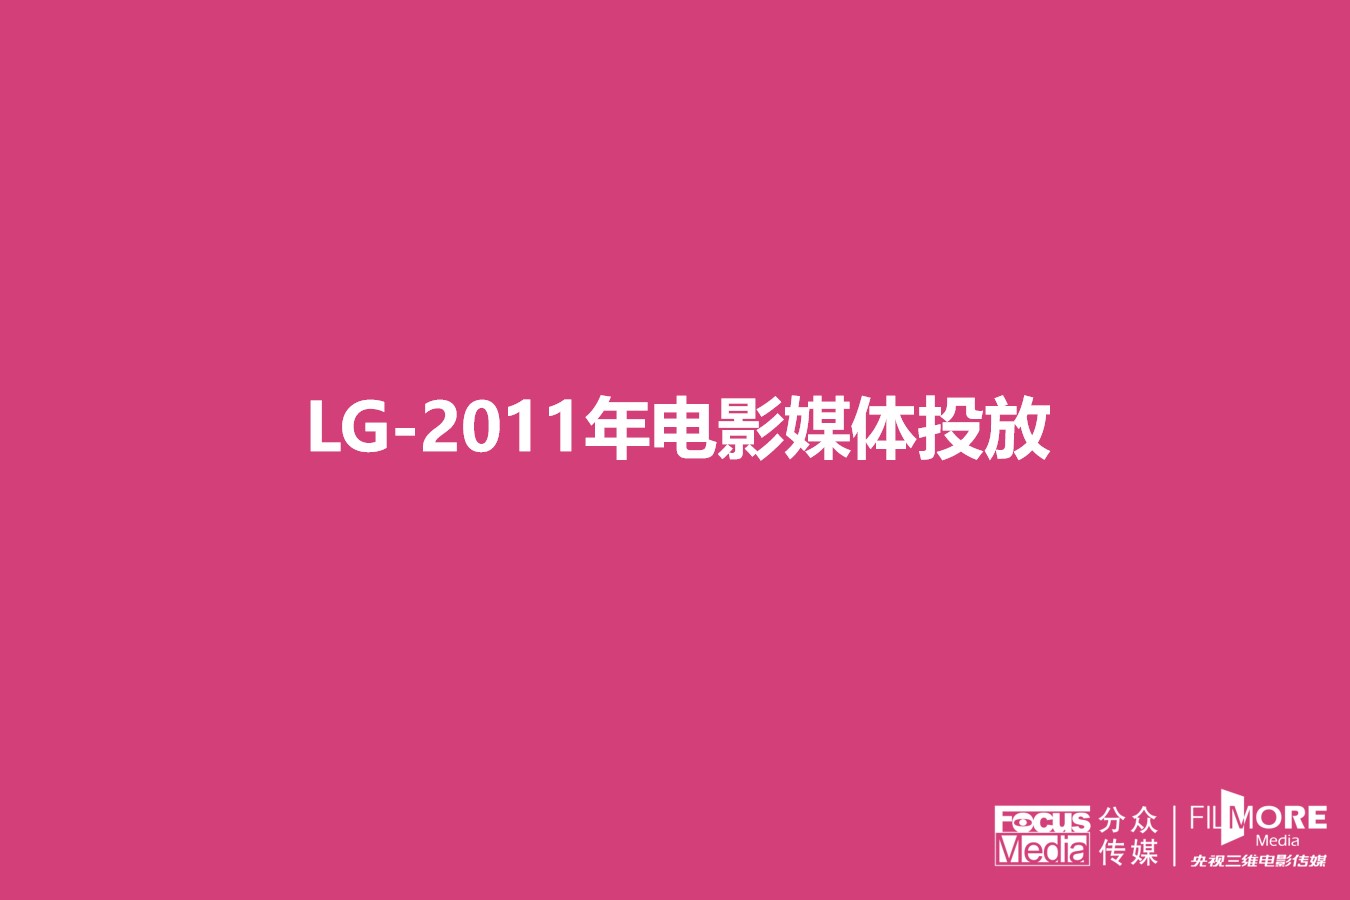 LG公司年度广告投放分析报告PPT 数据分析PPT